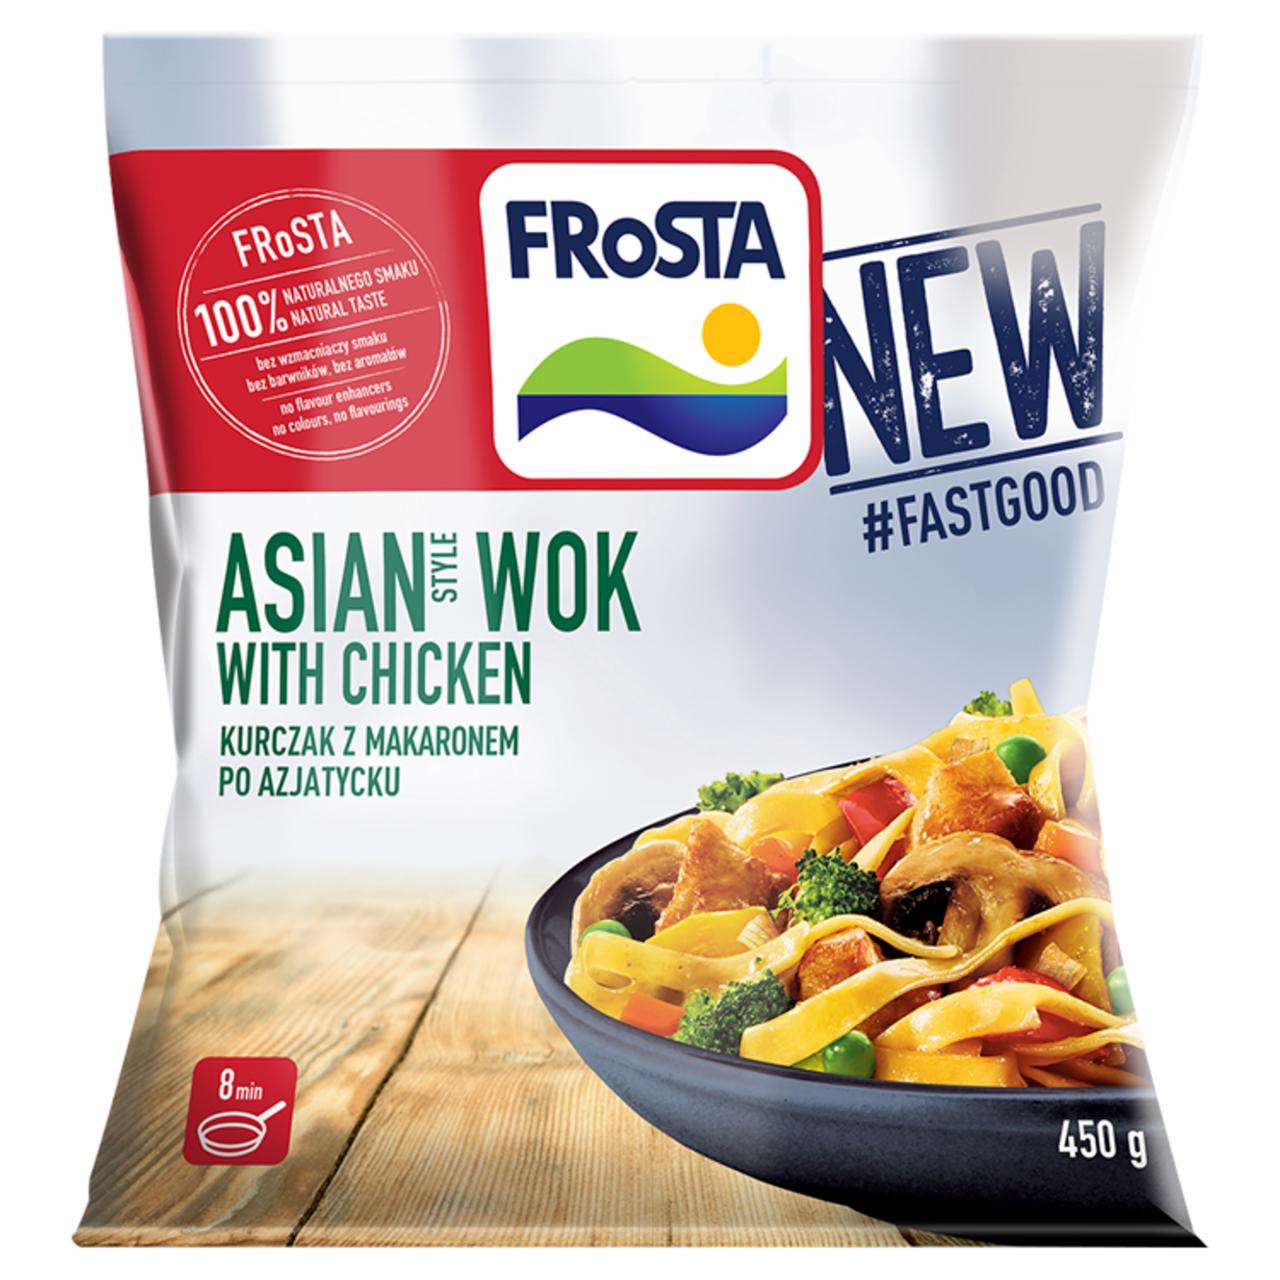 Zdjęcia - FRoSTA Asian Style Wok Kurczak z makaronem po azjatycku 450 g